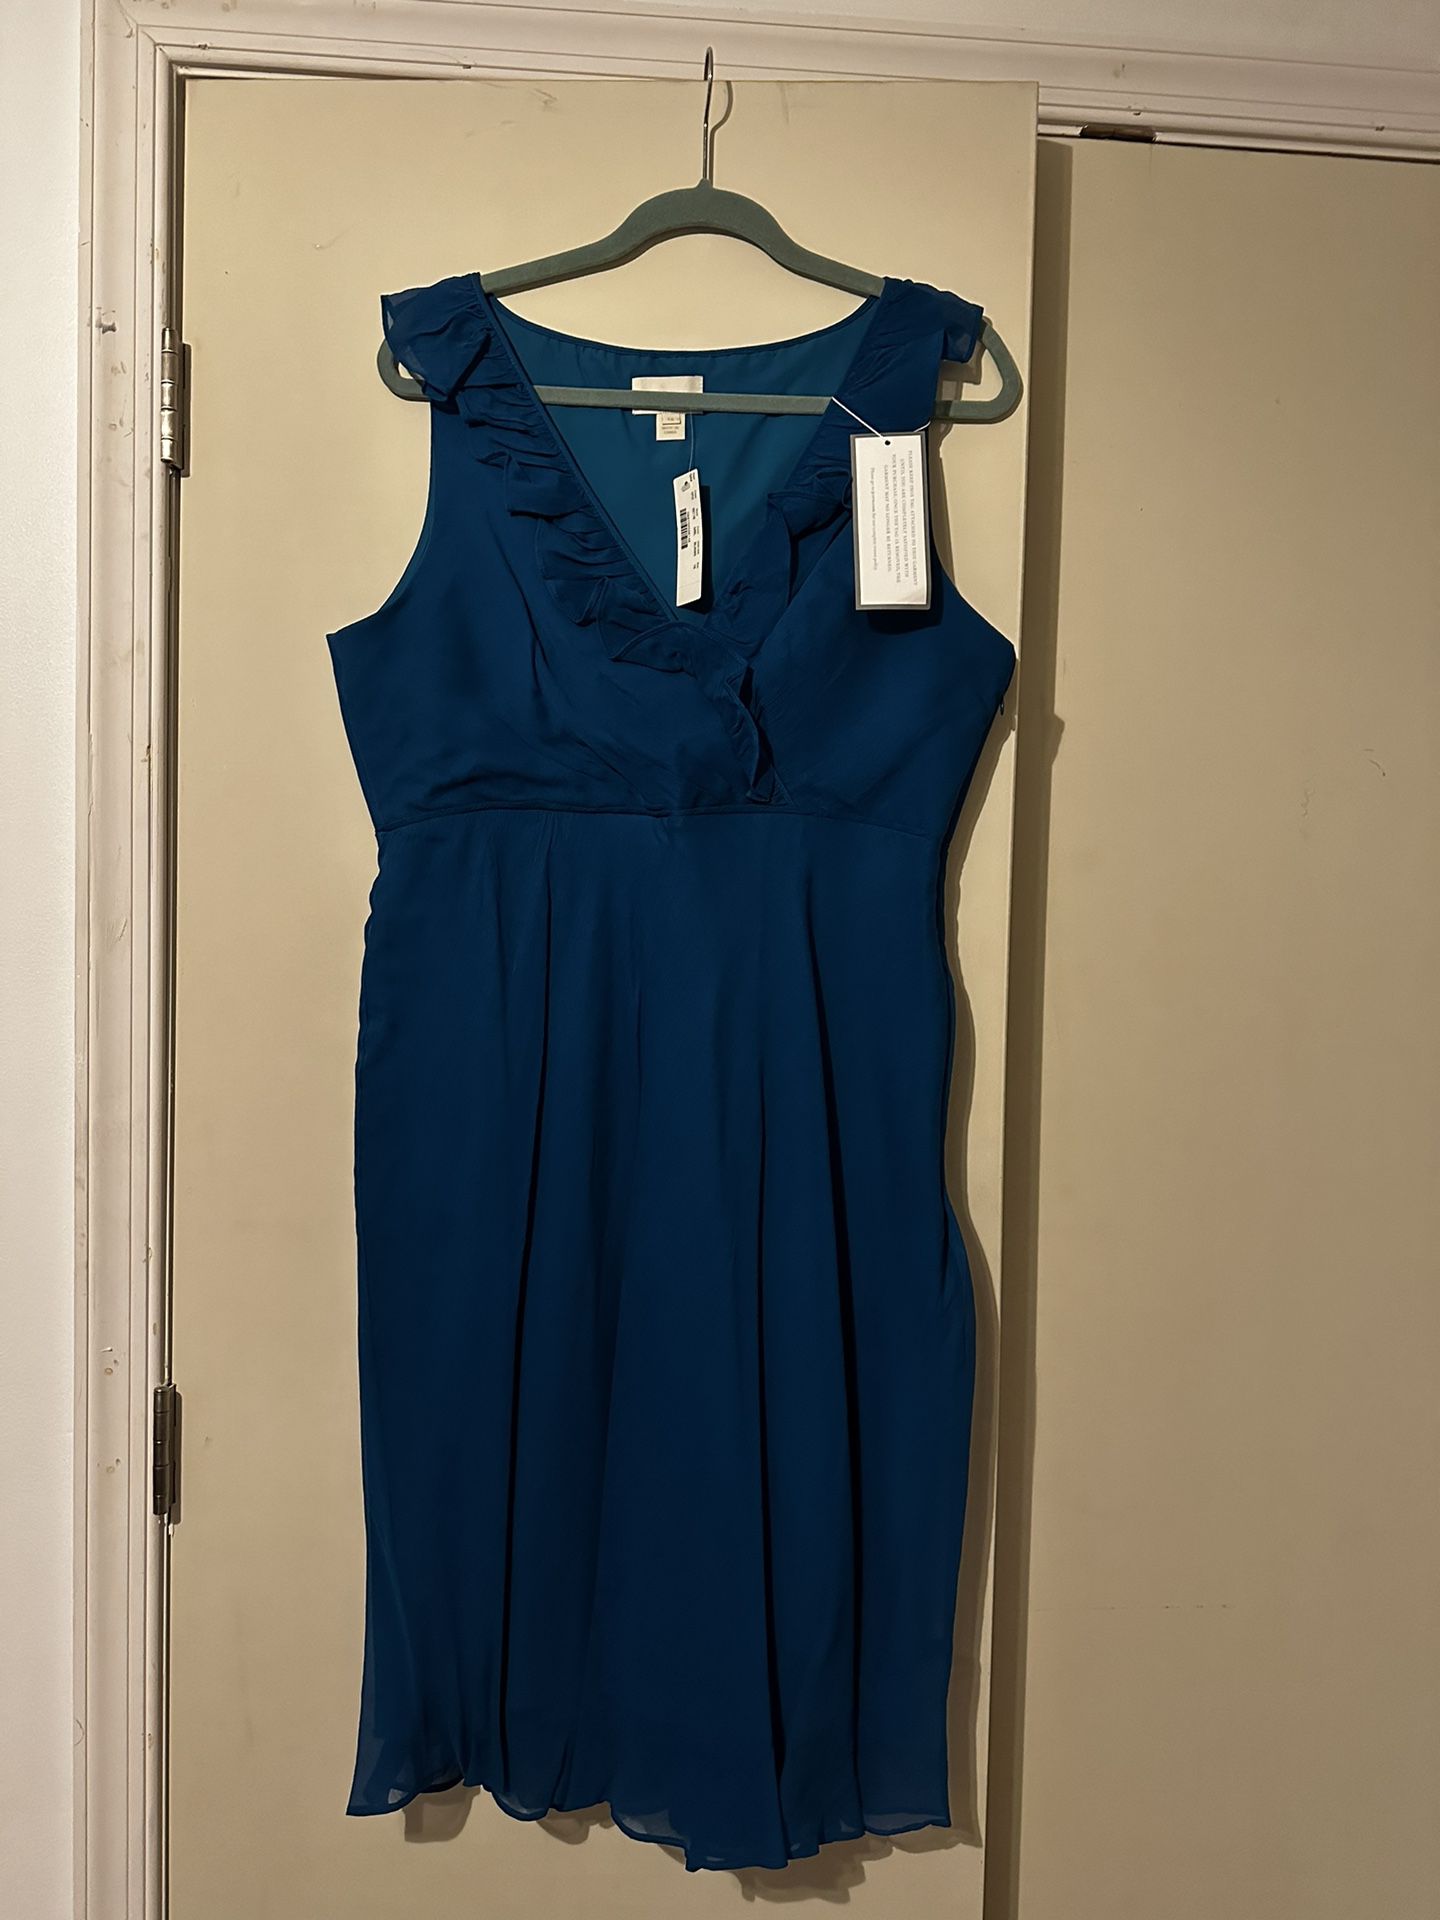 Jcrew Special Occasion Blue Chiffon Dress (size 16)